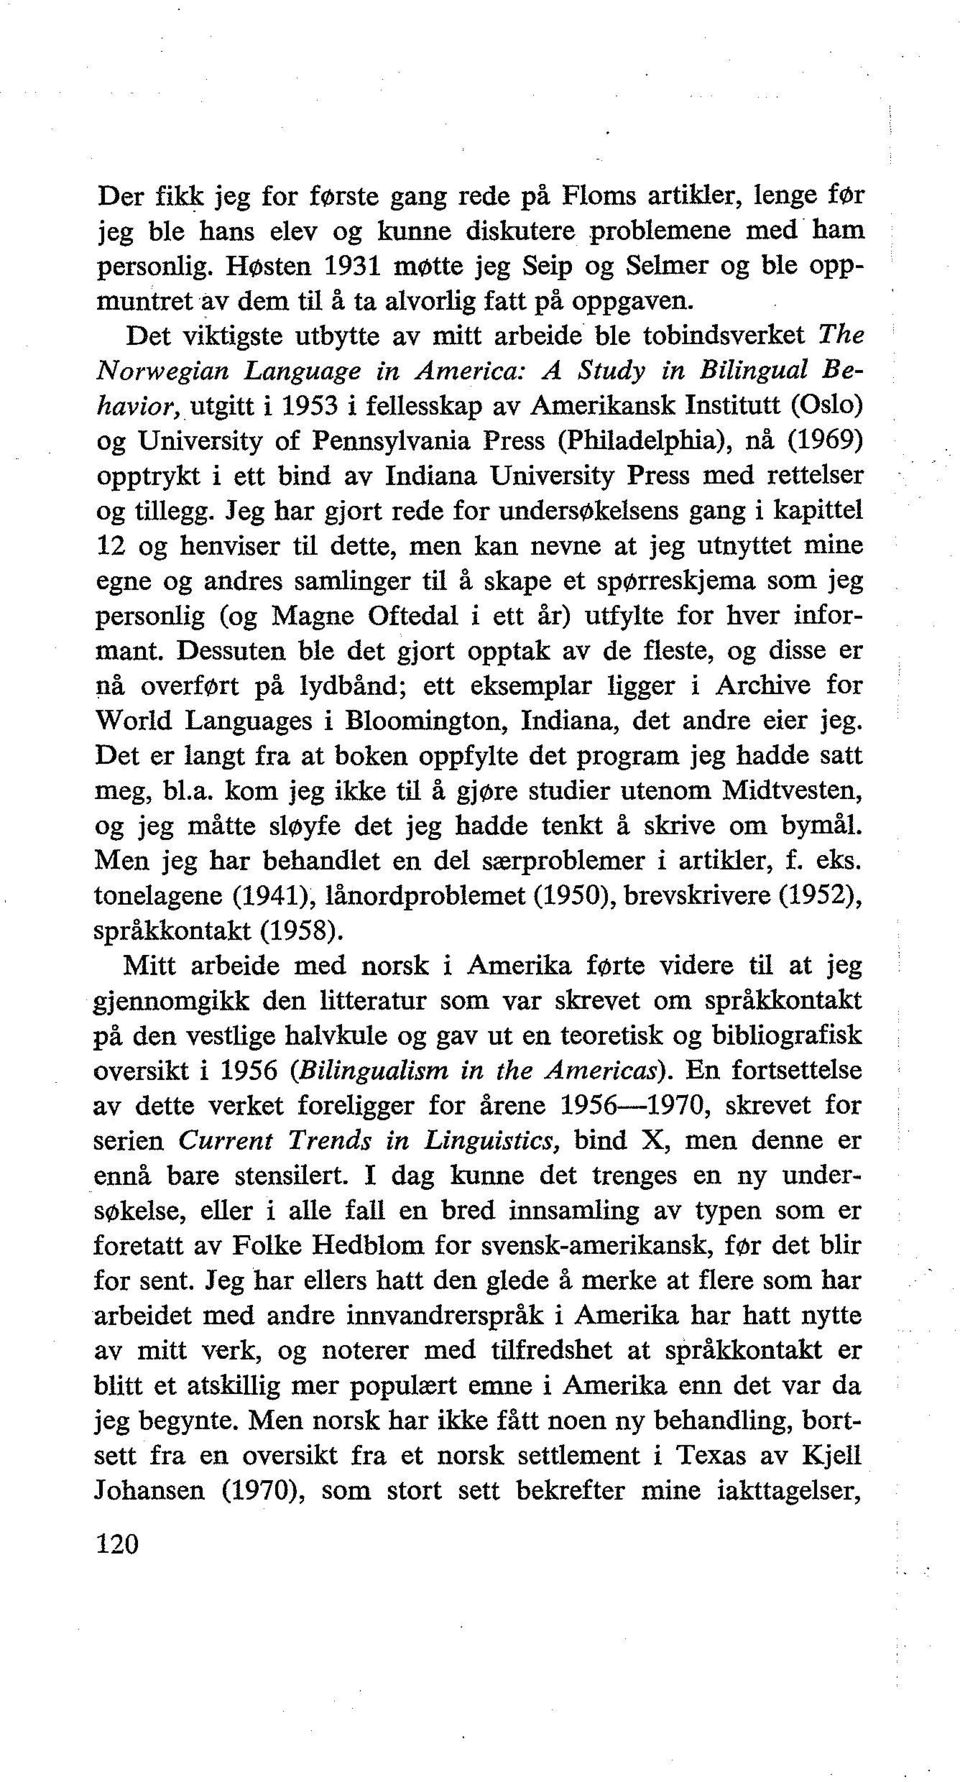 Det viktigste utbytte av mitt arbeide ble tobindsverket The Norwegian Language in America: A Study in Bilingual Behavior, utgitt i 1953 i fellesskap av Amerikansk Institutt (Oslo) og University of